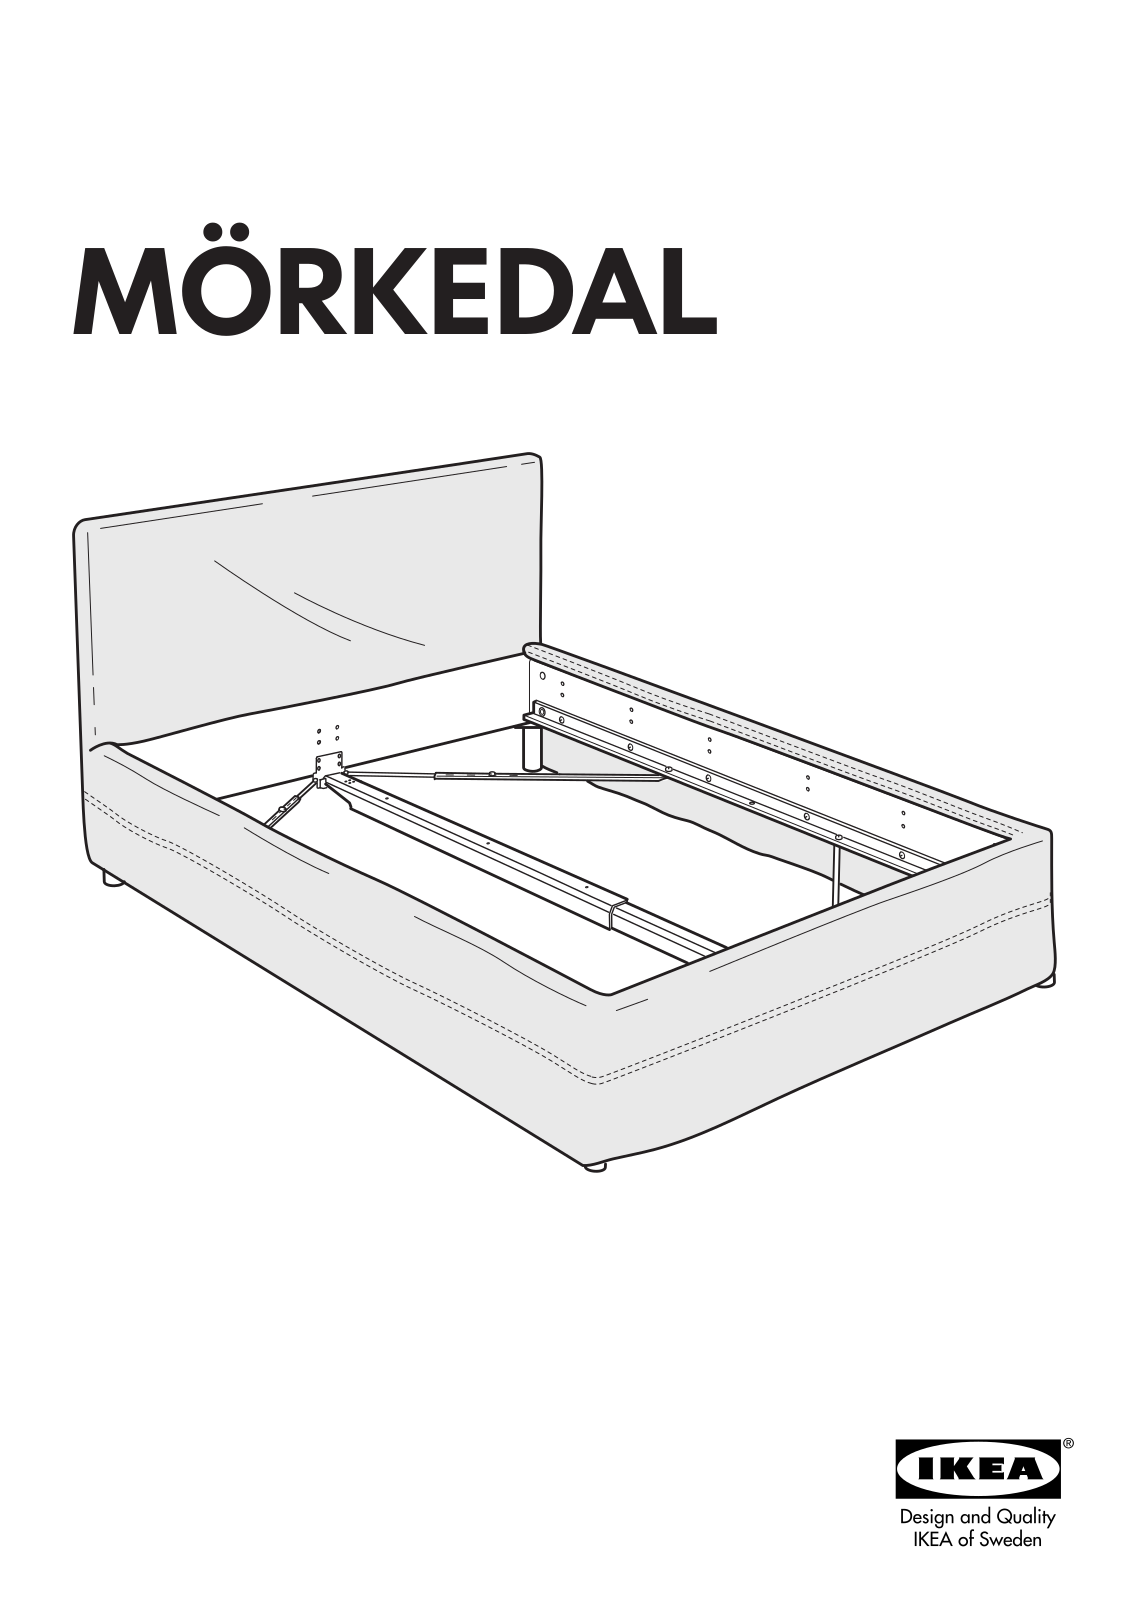 IKEA MÖRKEDAL COVER W/ SKIRT QUEEN User Manual